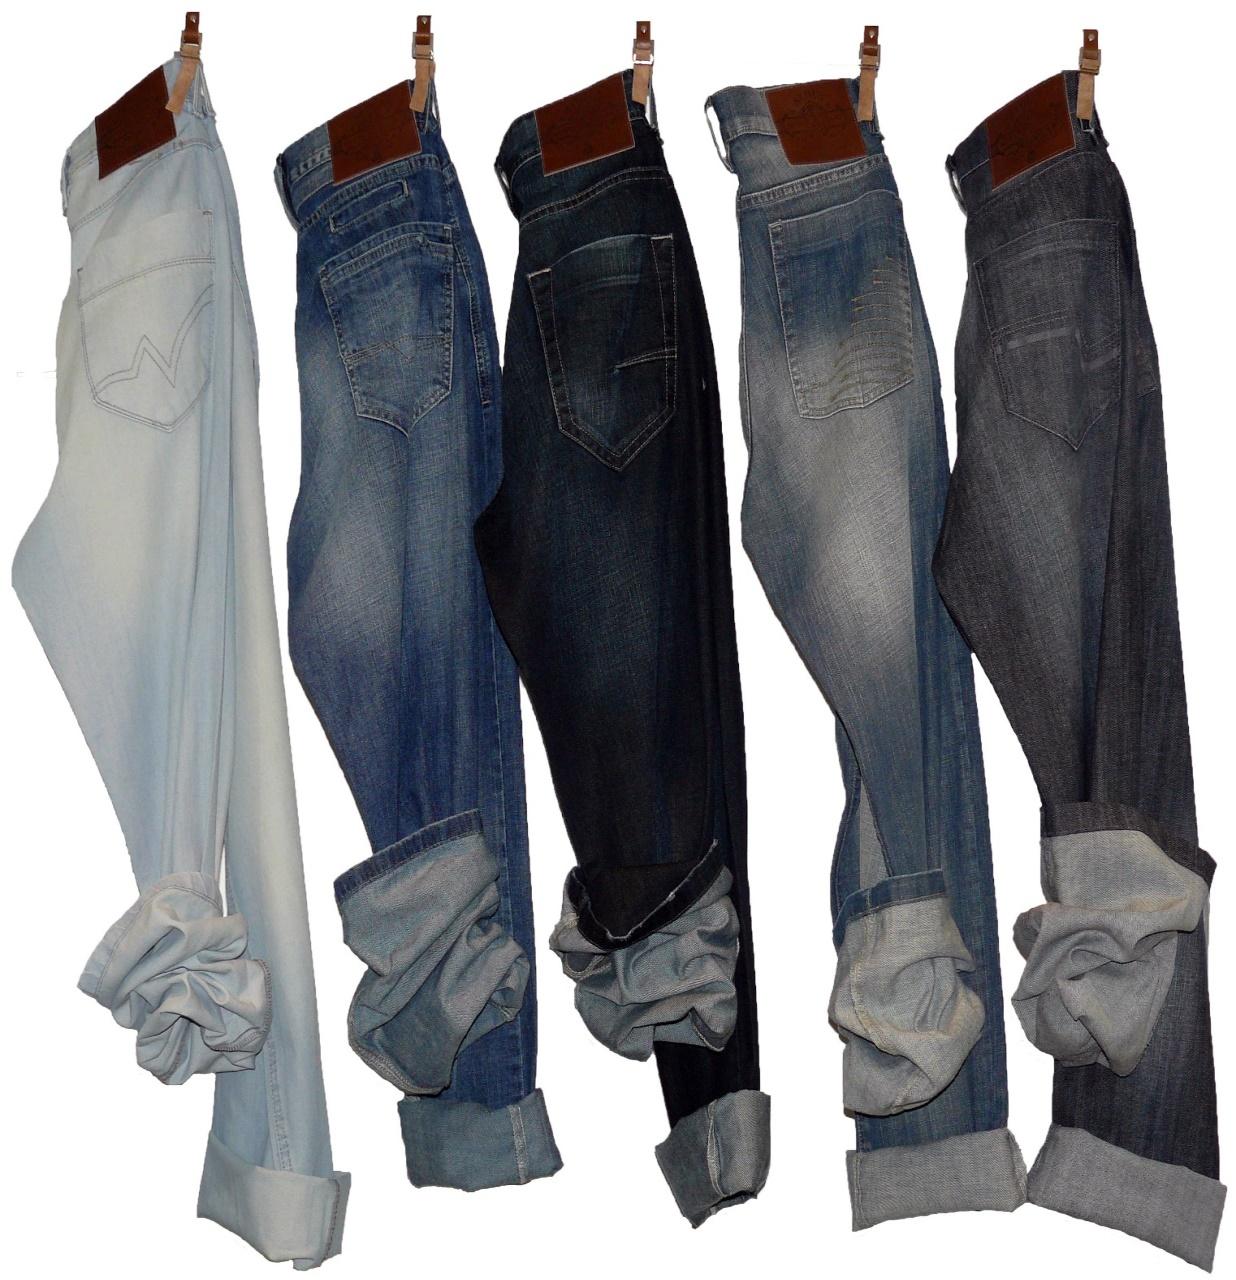 Τα jeans σχεδιάζονται στις ΗΠΑ από αμερικάνικες εταιρίες Το ύφασμα φτιάχνεται από βαμβάκι το οποίο καλλιεργείται στο Μπένιν, υφαίνεται και βάφεται στην Ιταλία με βαφές που φτιάχνονται στη Γερμανία Τα